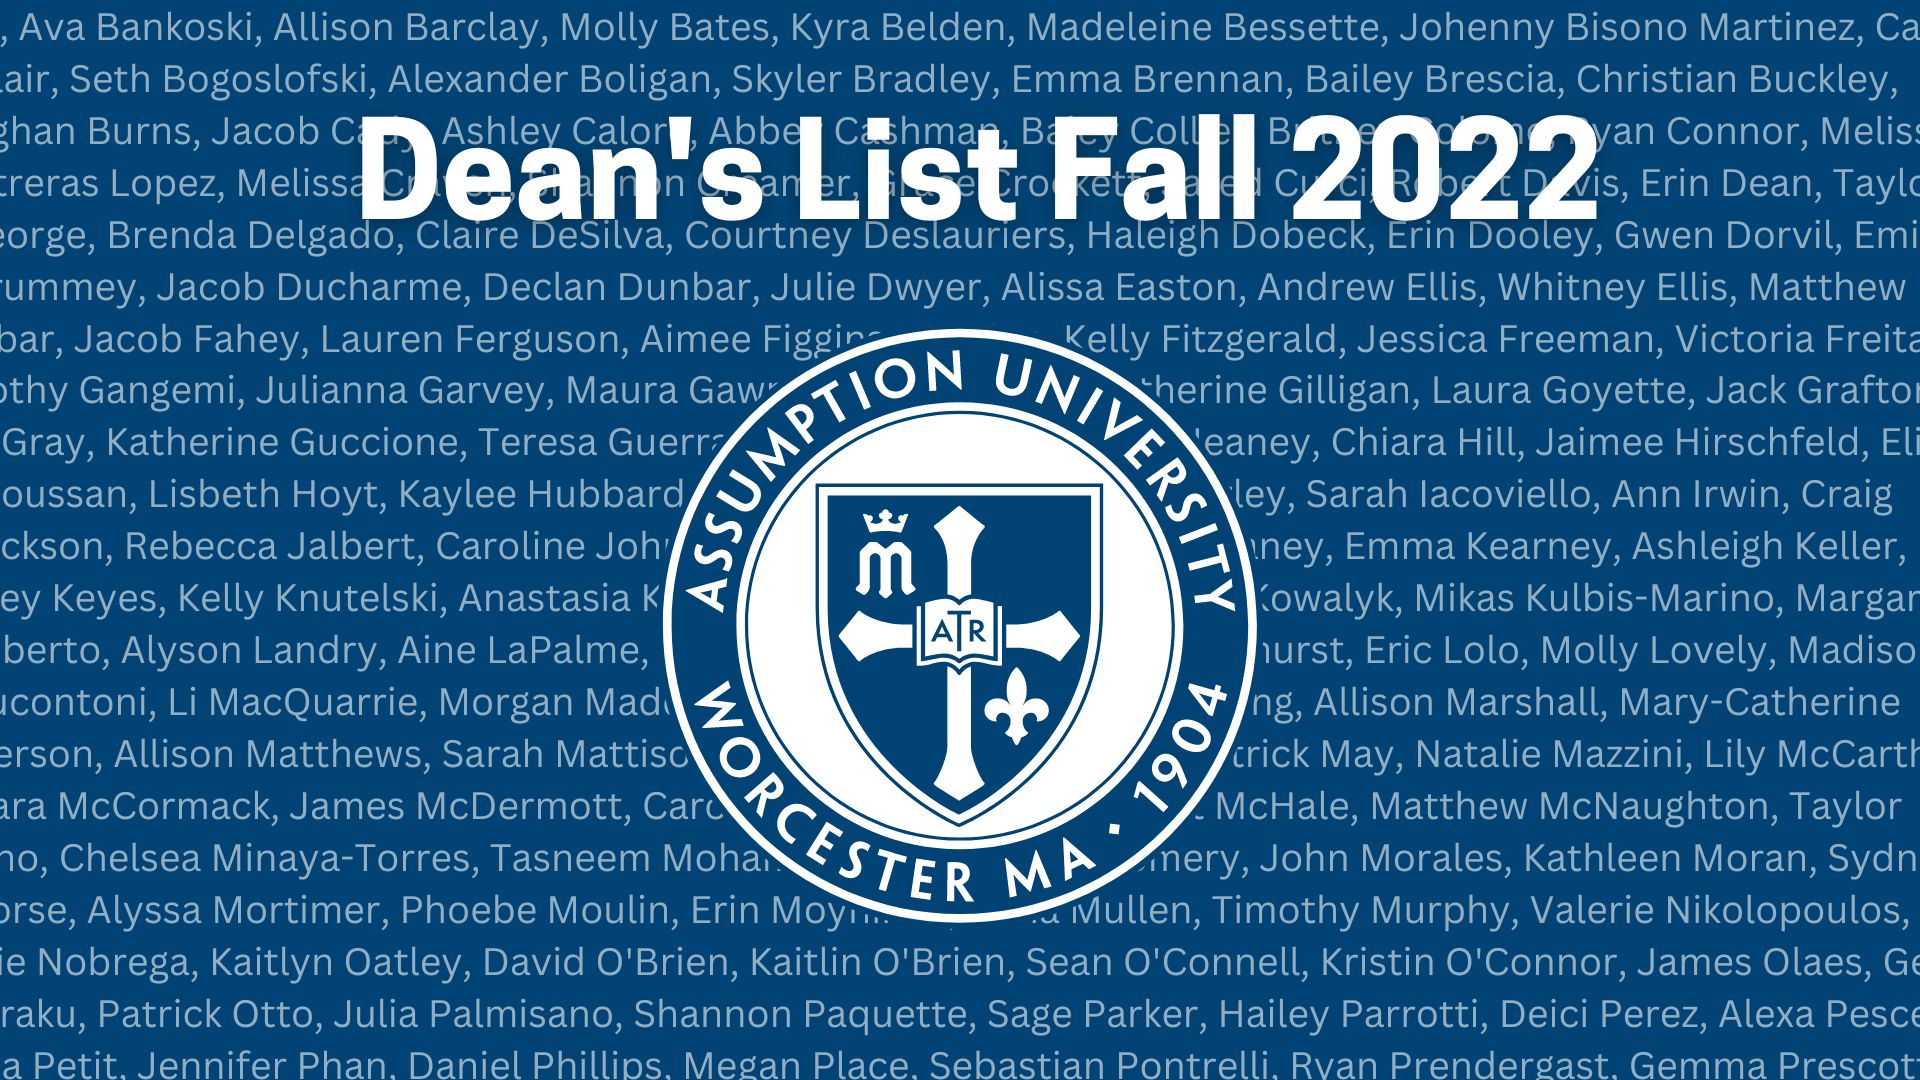 Deans List Fall 2022 